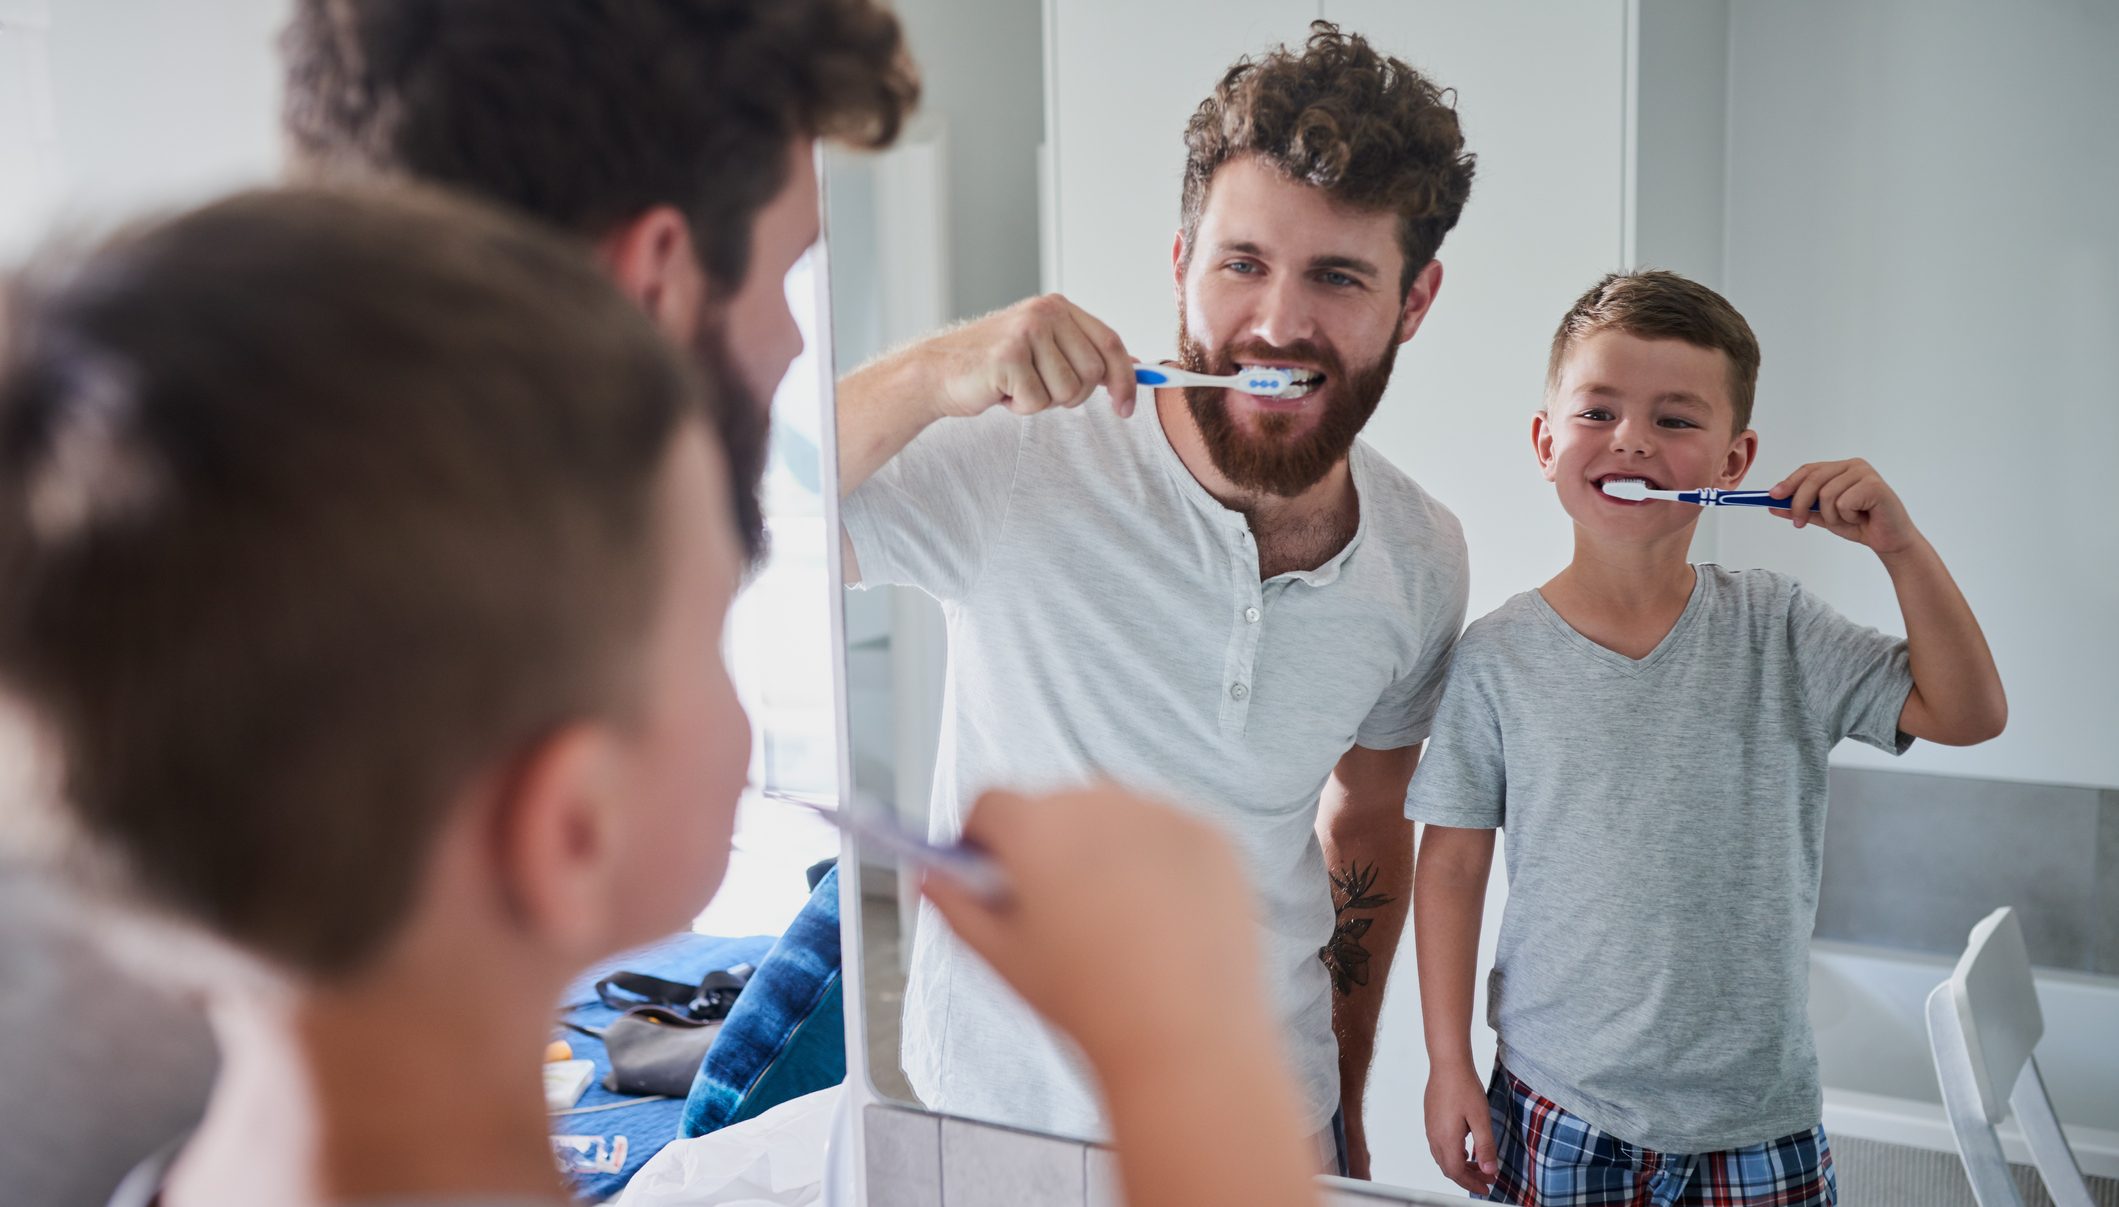 kids brushing teeth